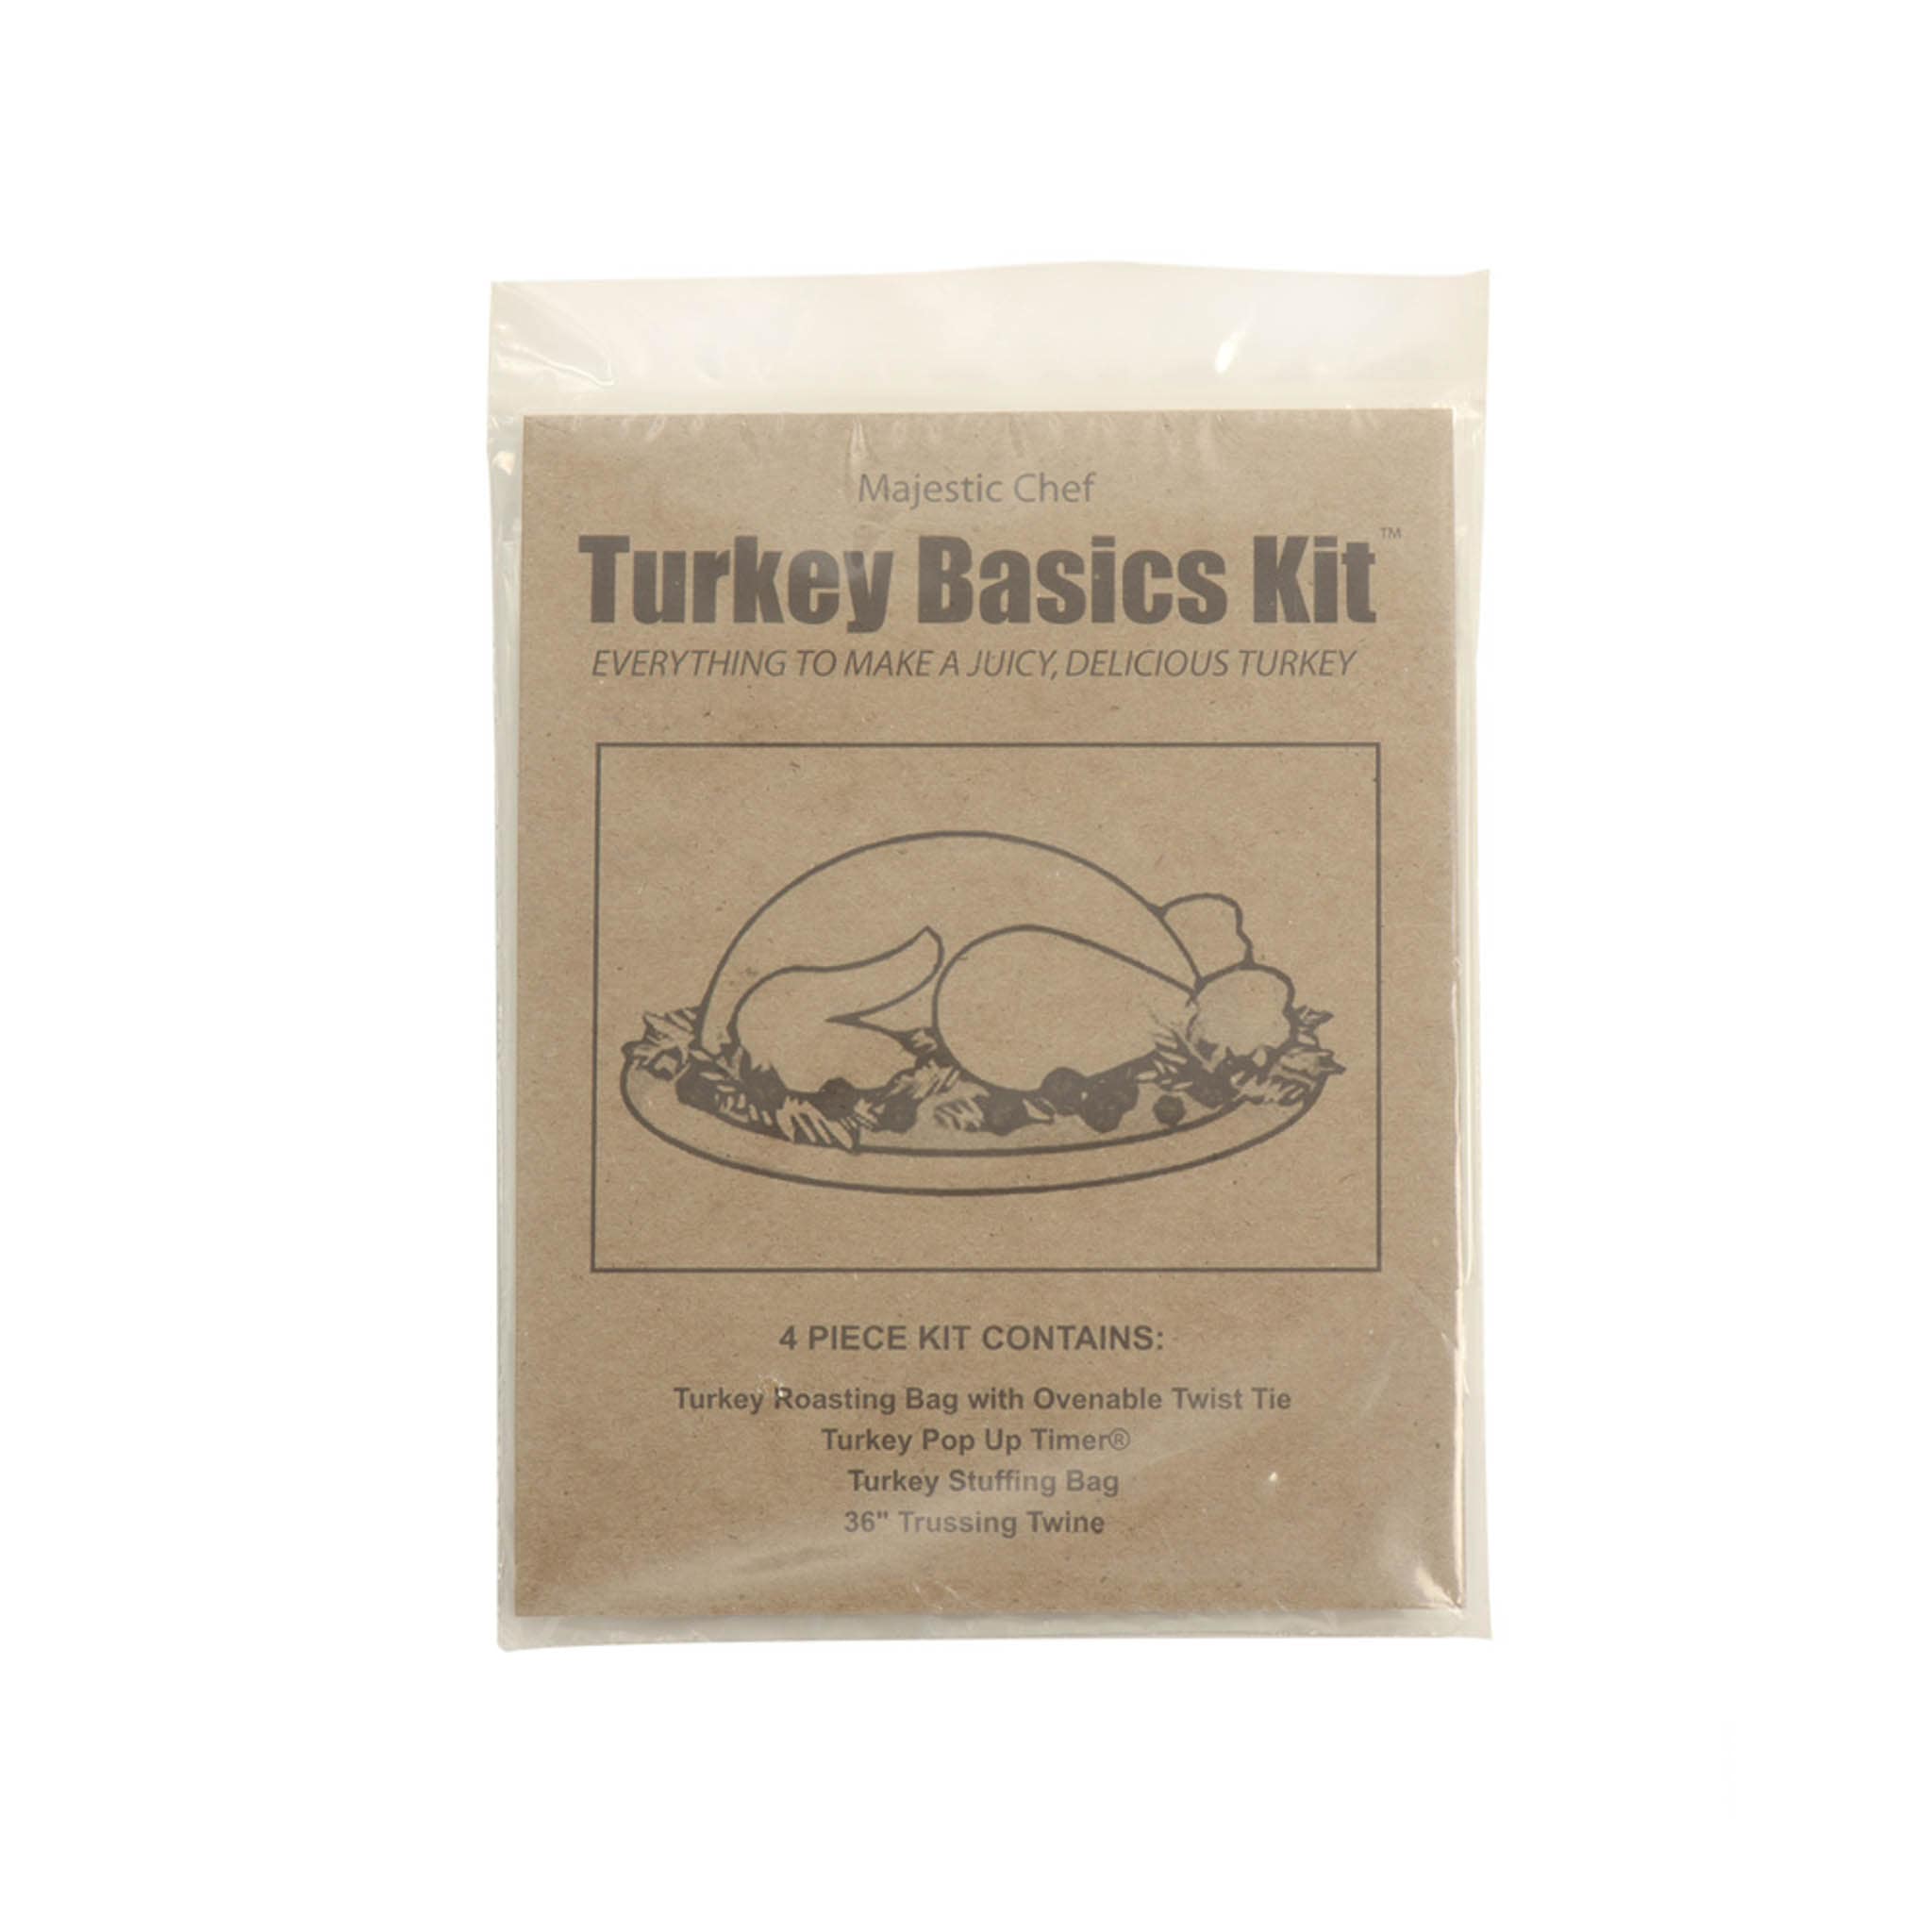 4 Piece Turkey Basics Kit